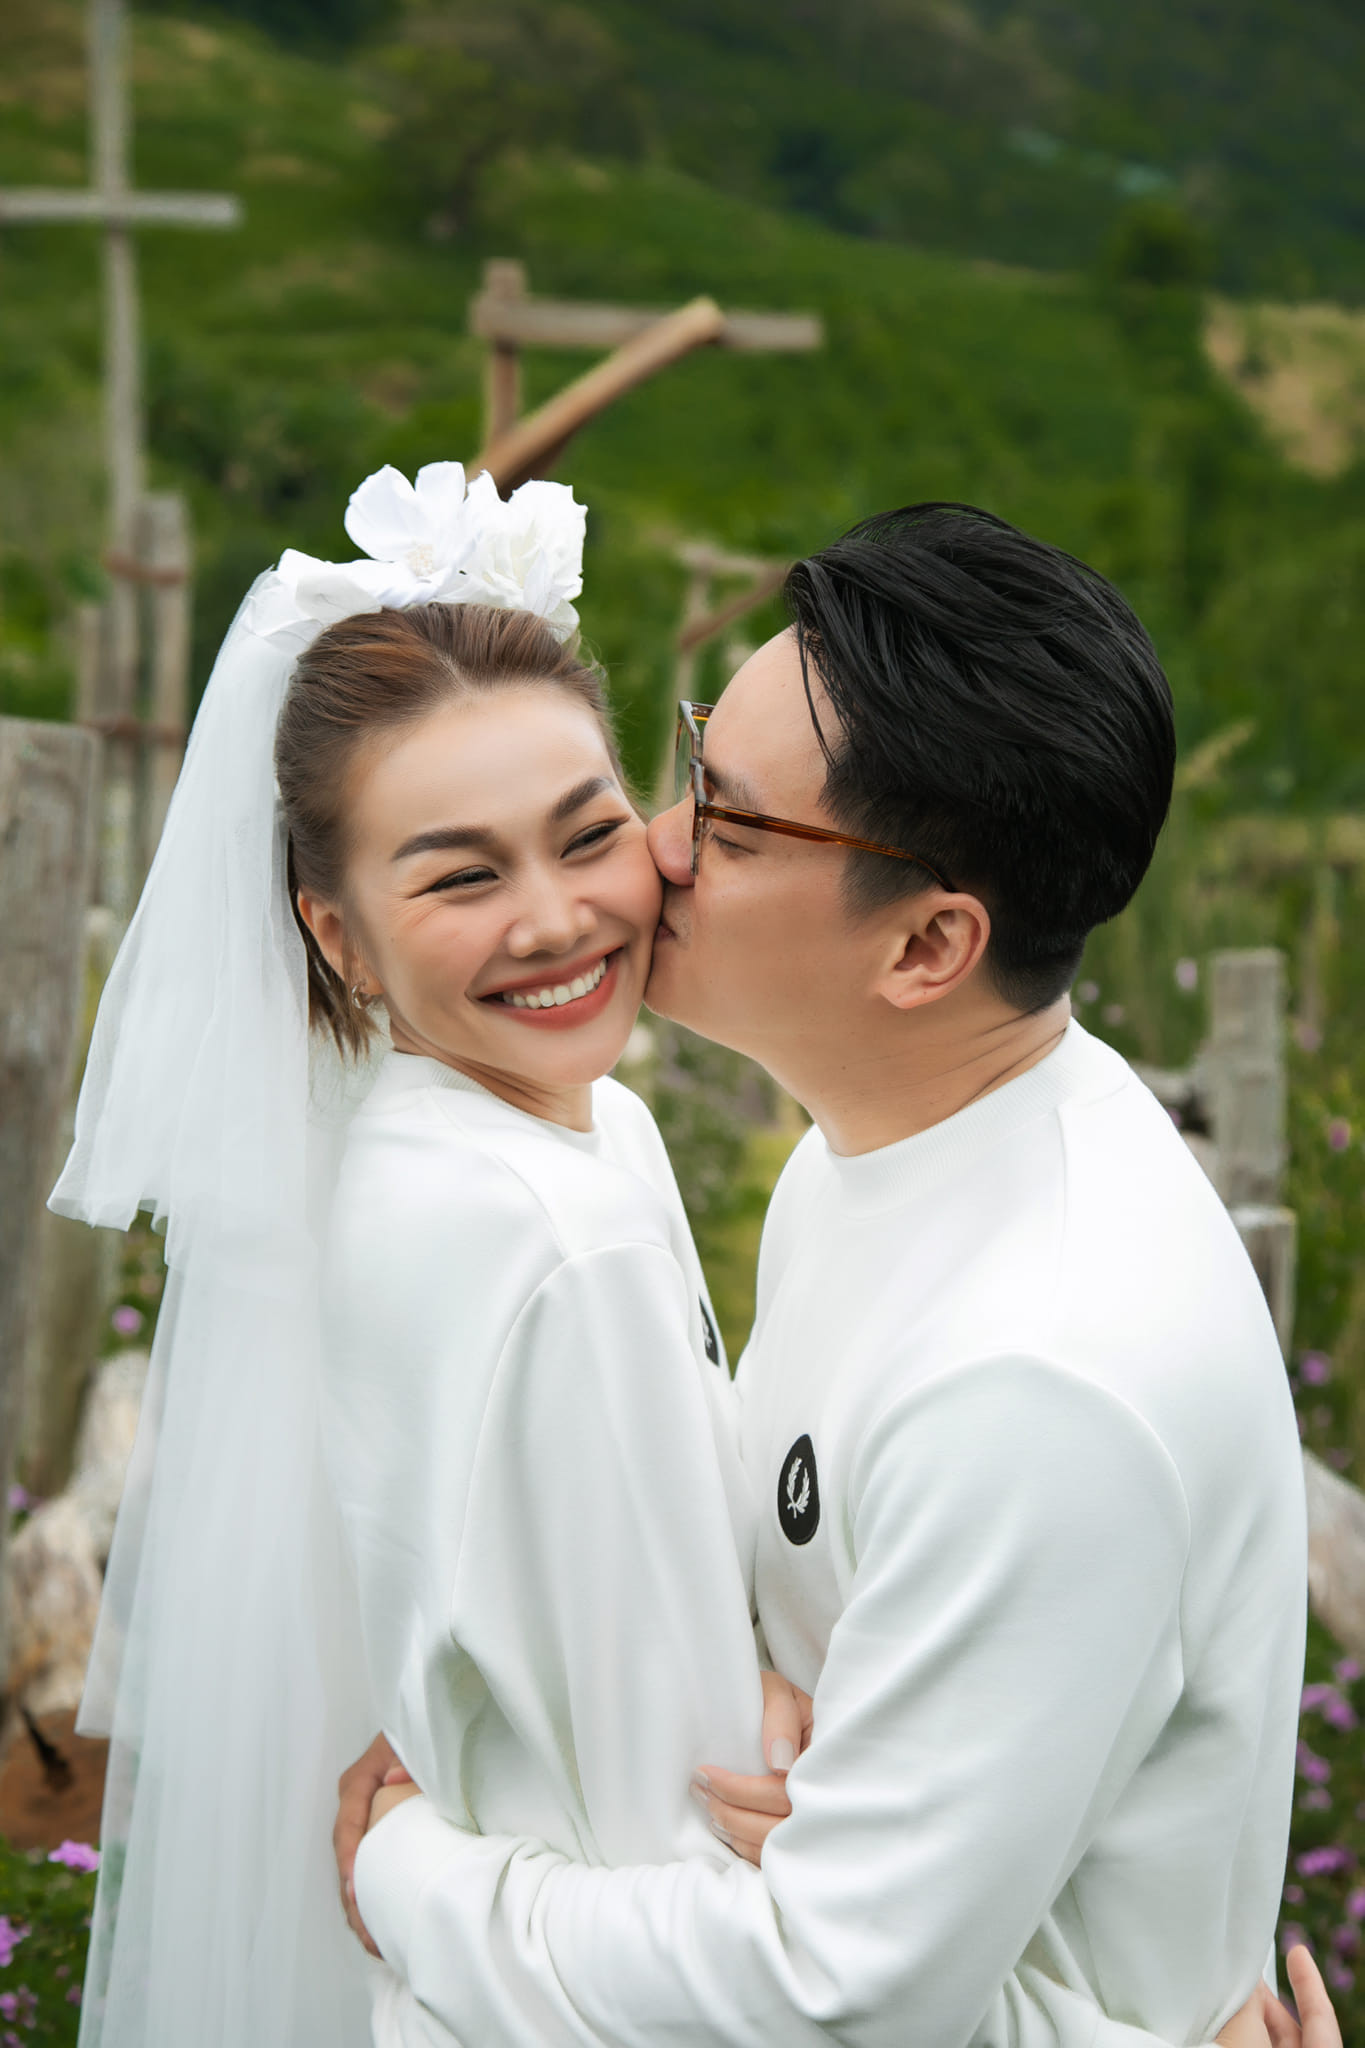 Siêu mẫu Thanh Hằng ngập tràn hạnh phúc bên chồng nhạc trưởng - Ảnh 2.